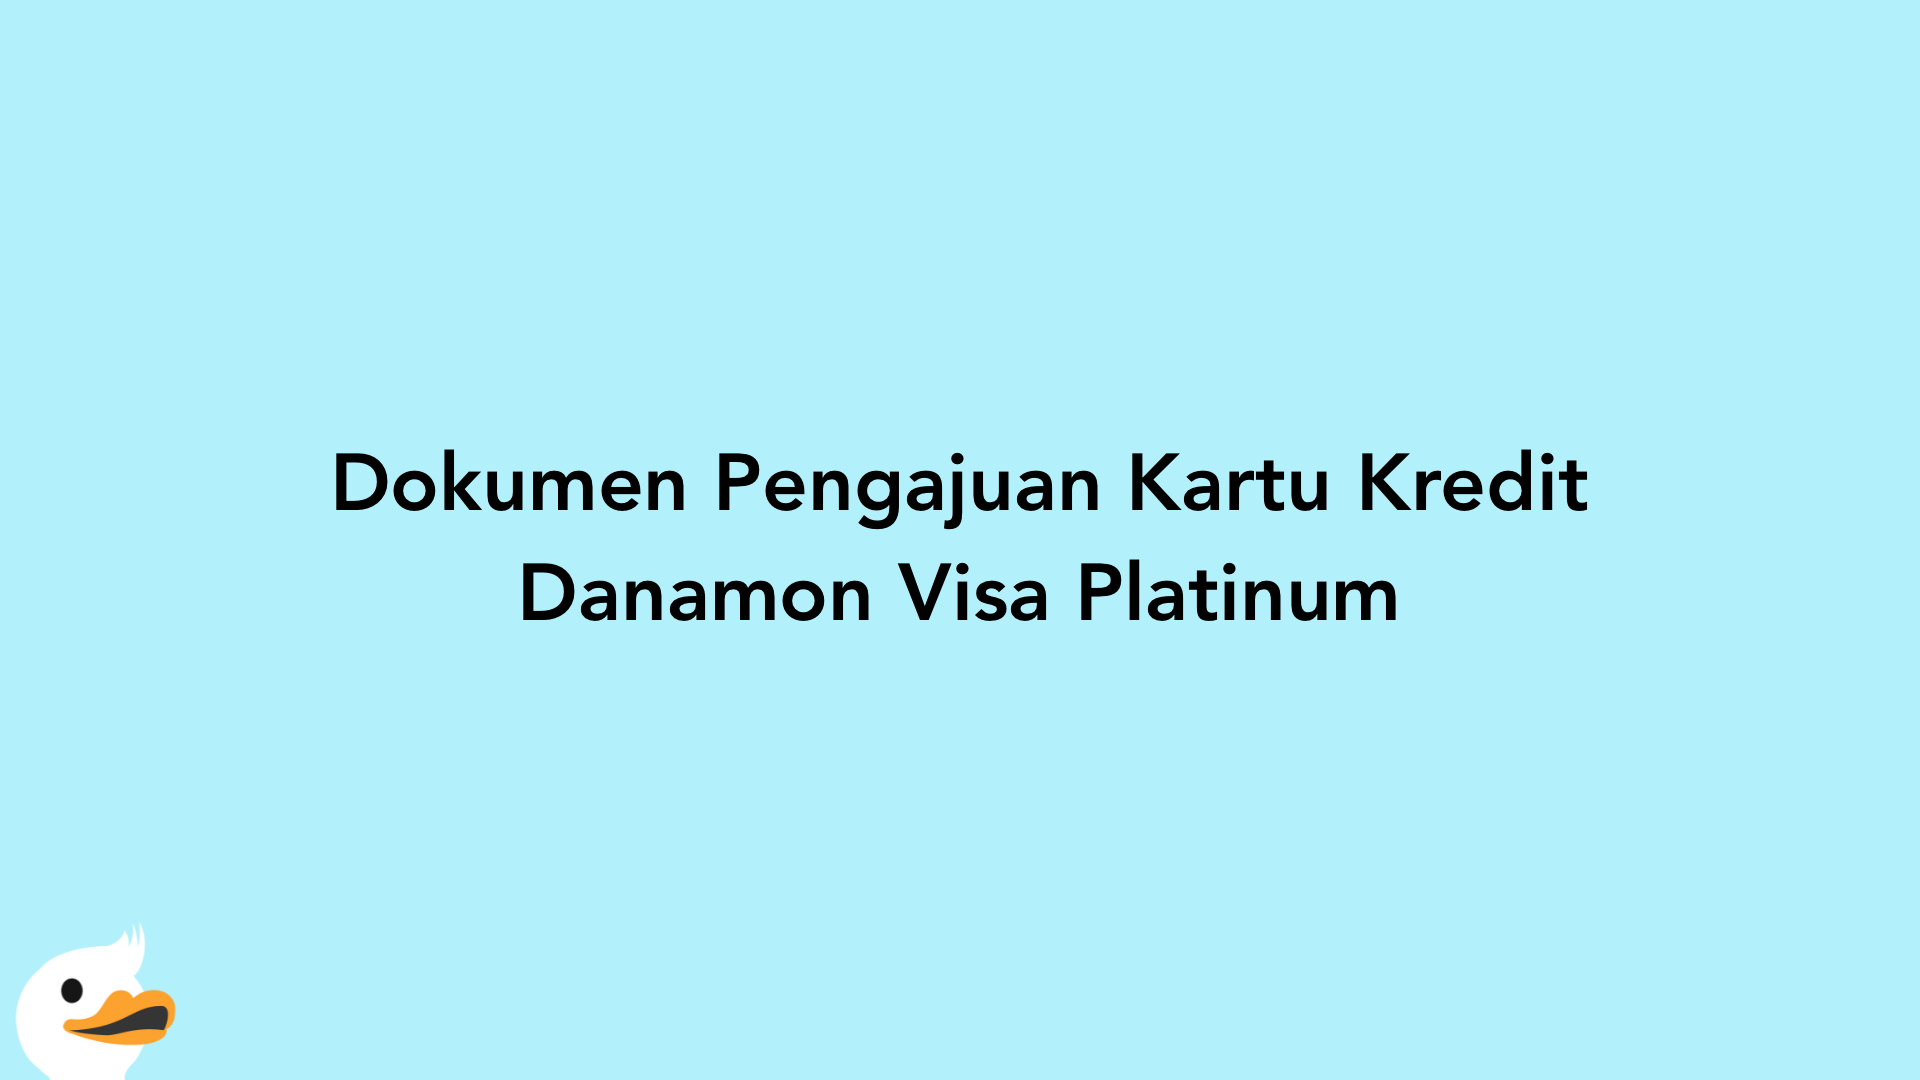 Dokumen Pengajuan Kartu Kredit Danamon Visa Platinum